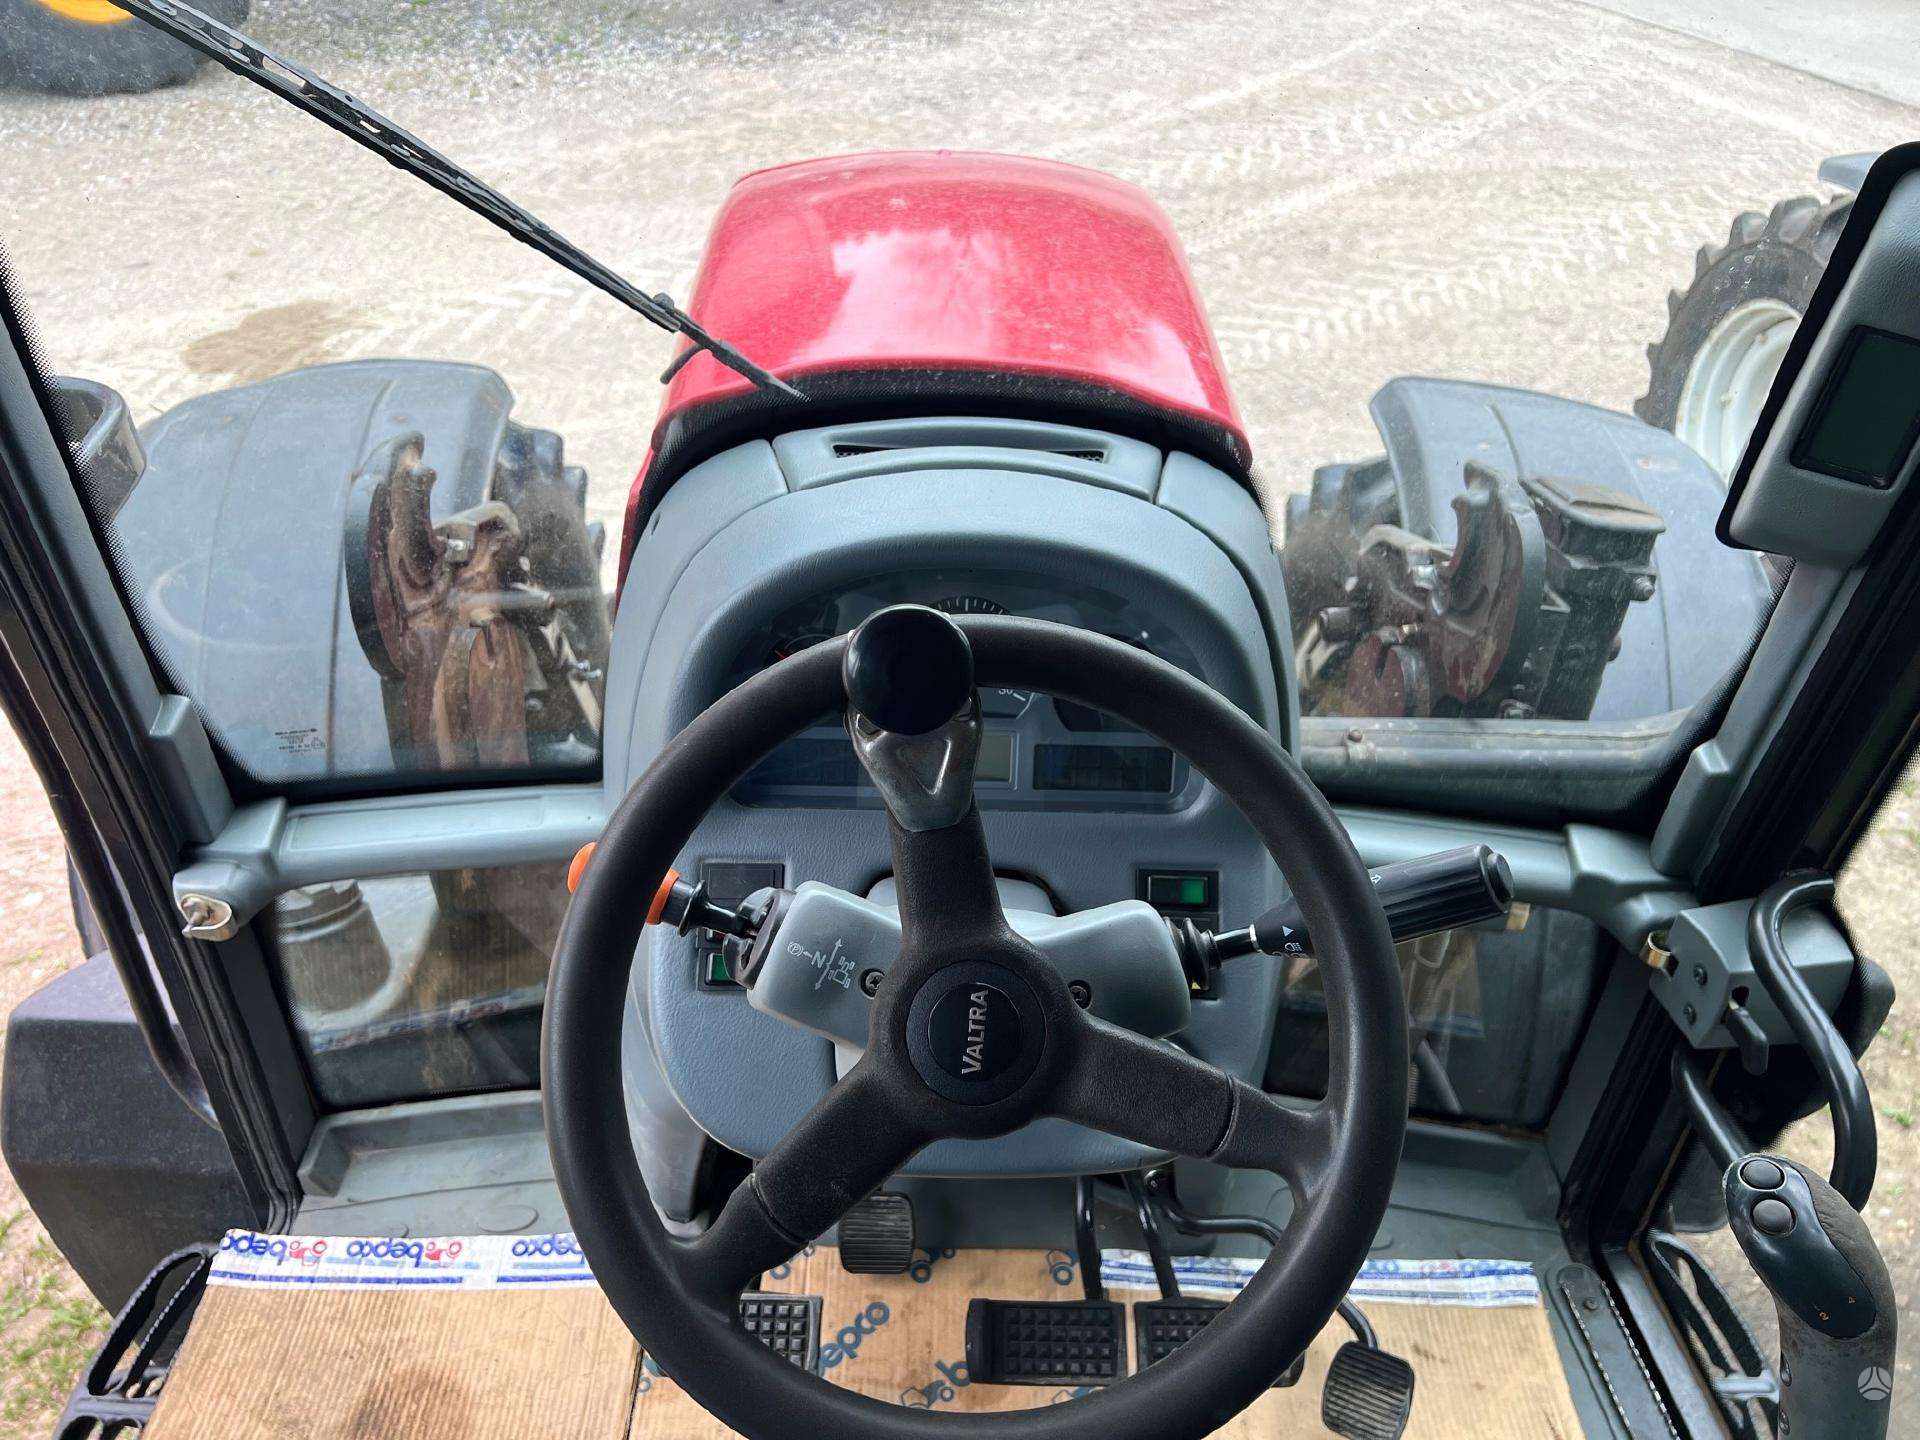 AGROTEKMA naudoti traktoriai, prekyba